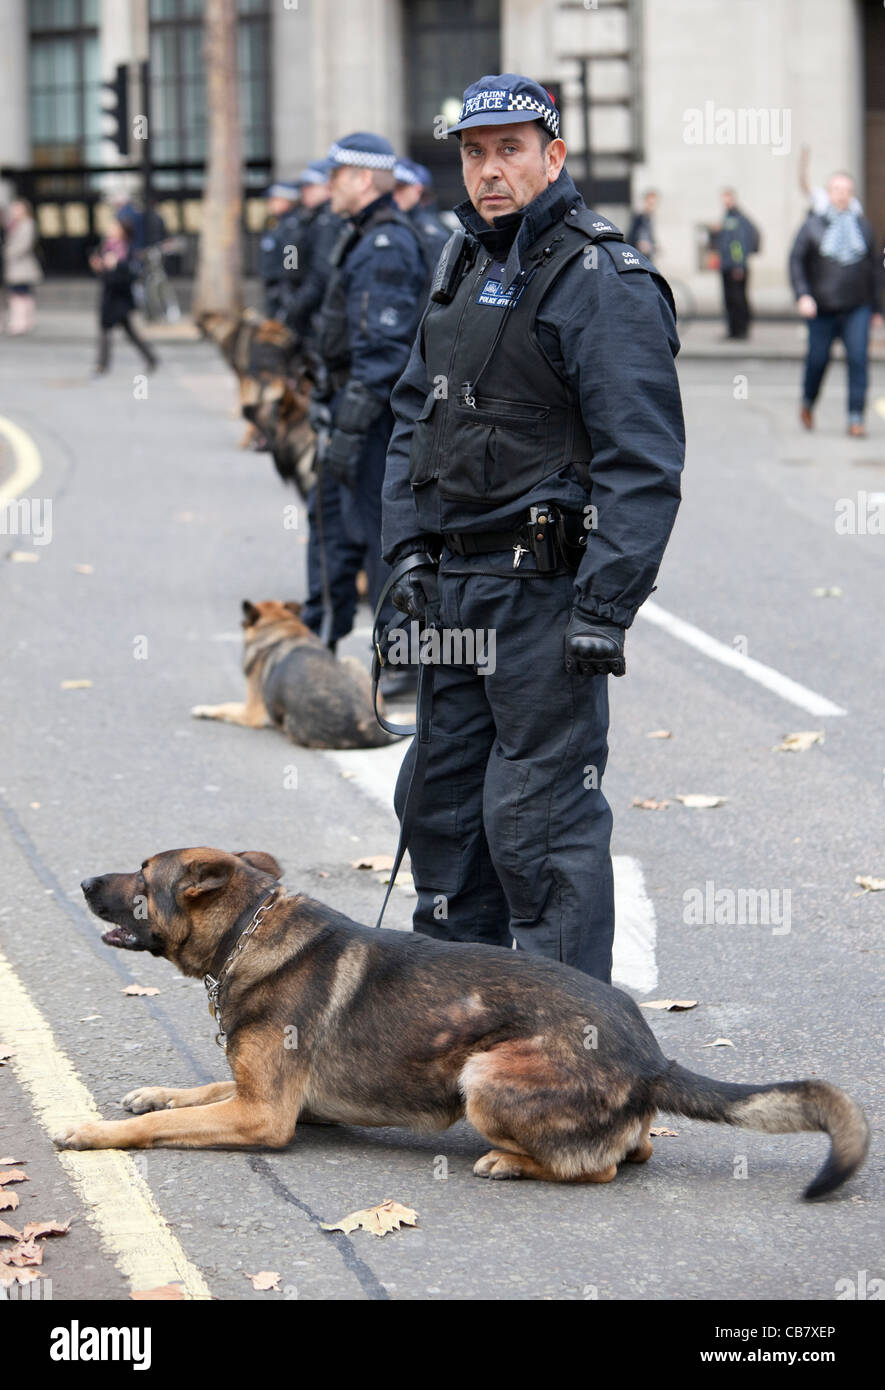 Force de police britannique Riot avec chiens, à la grève du secteur public (les syndicats), Londres, Angleterre, 2011, Royaume-Uni. Banque D'Images